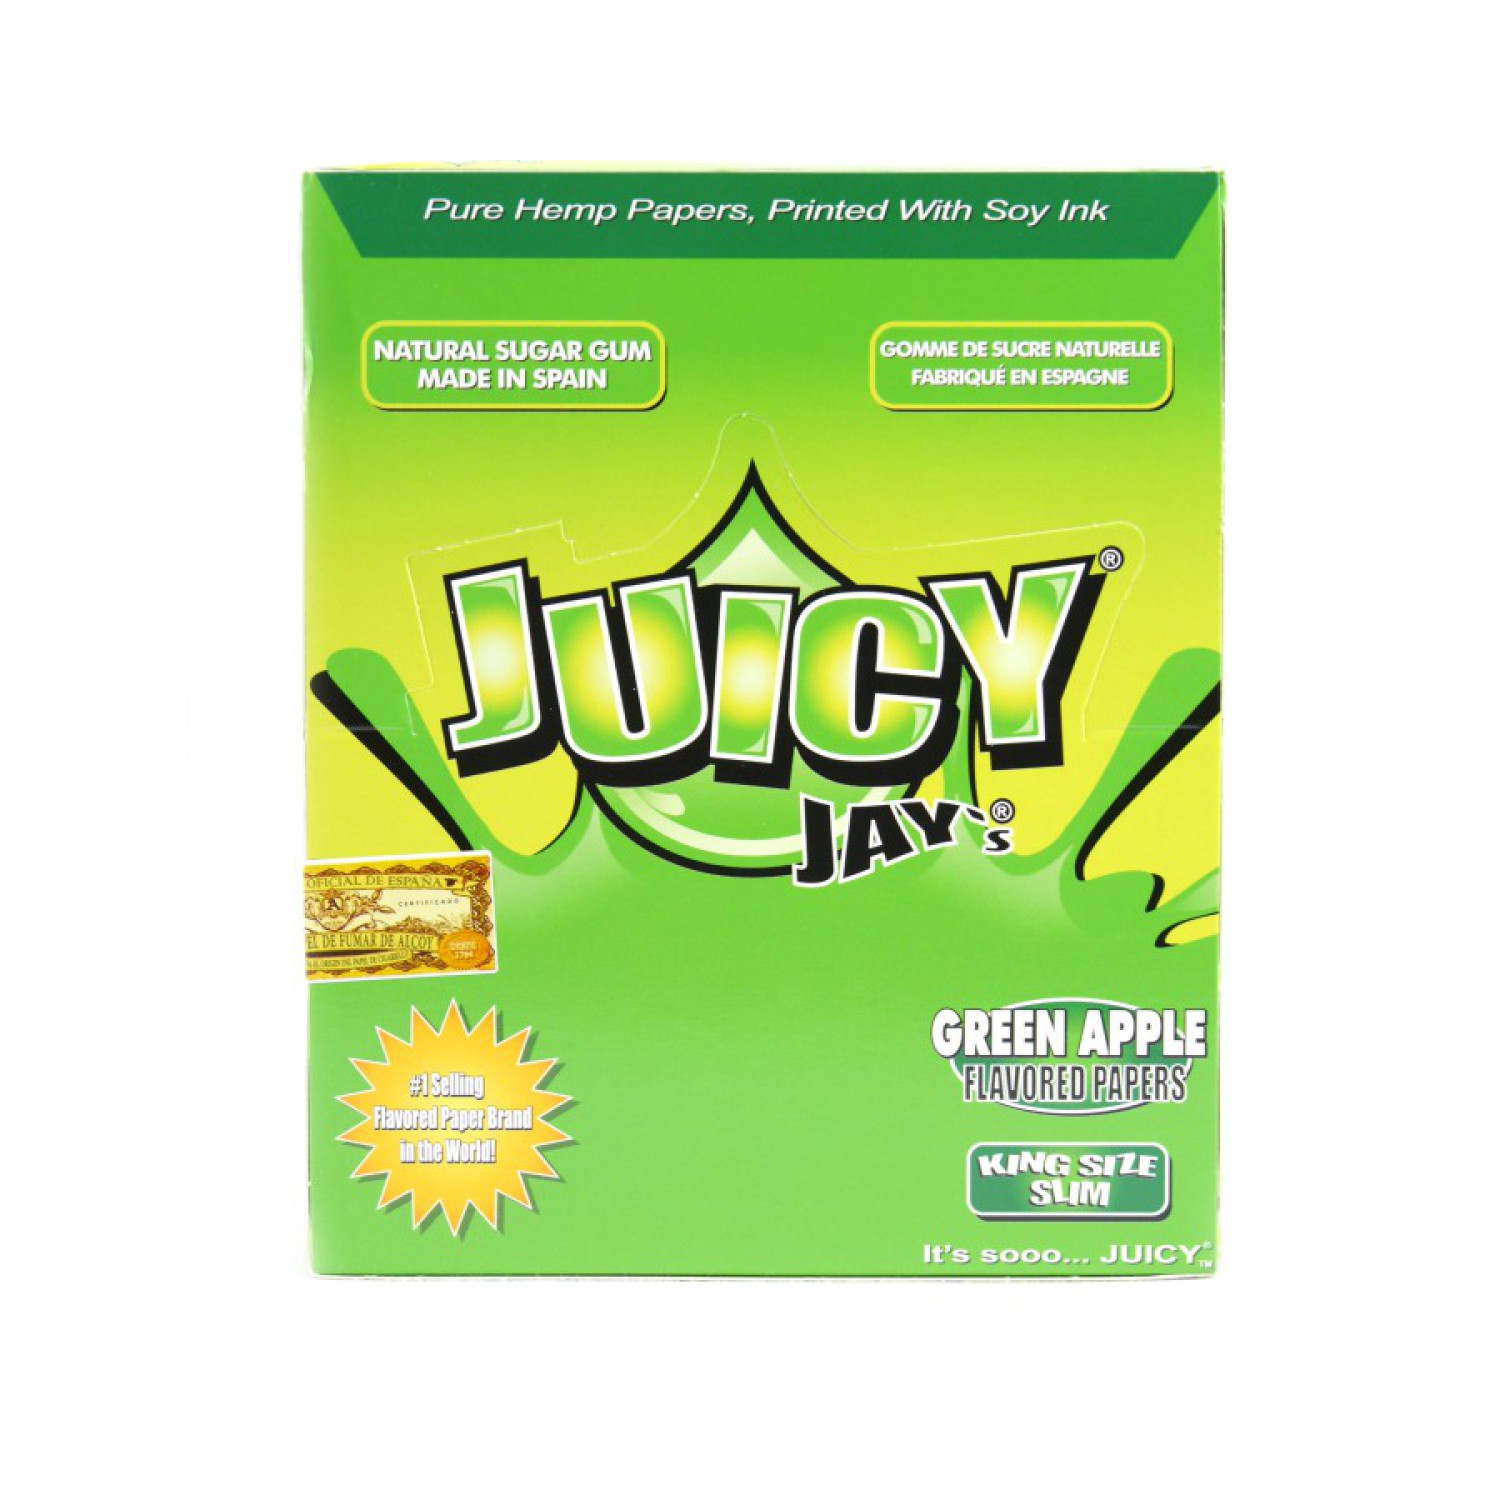 Juicy Jays "Grüne Apfel / GREEN APPLE" KS Slim 